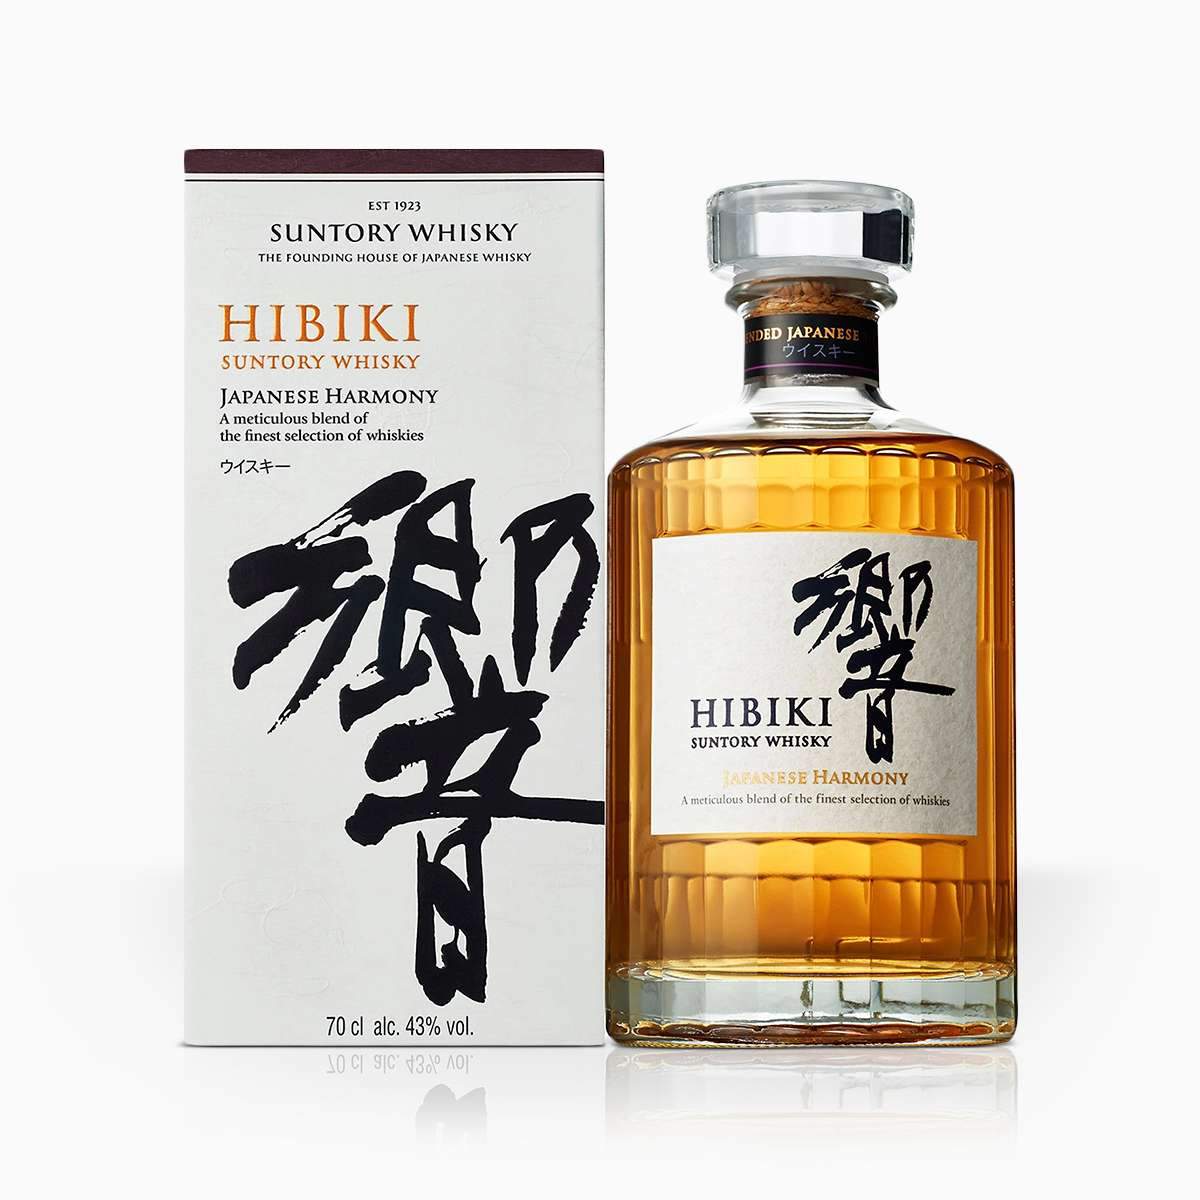 Whisky Suntory Hibiki Harmony 43% 0,7l